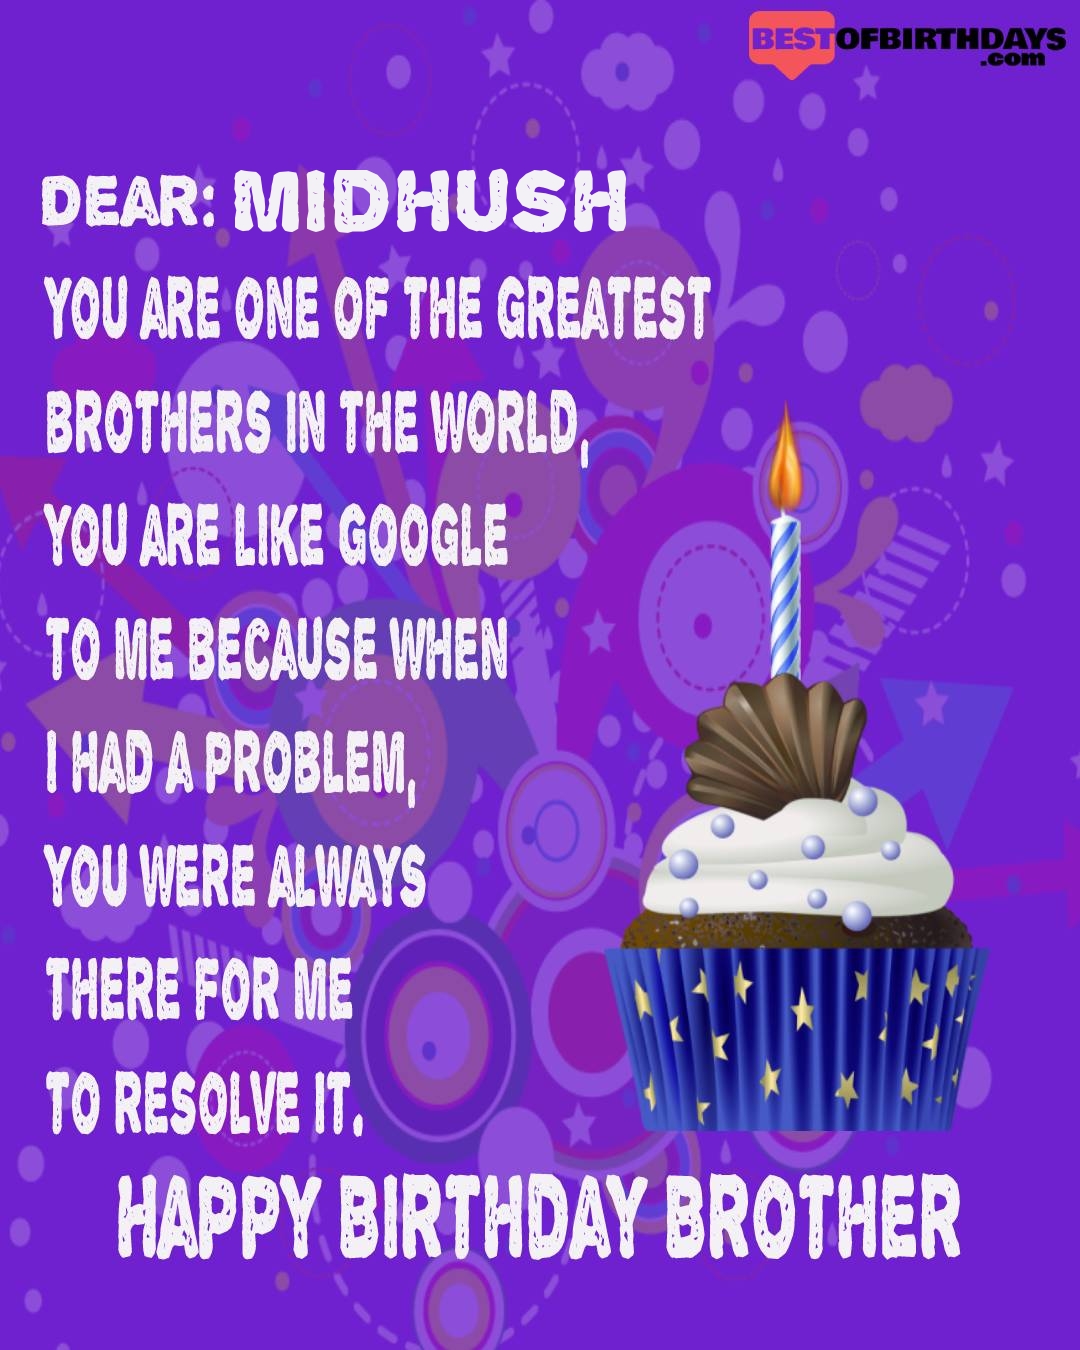 Happy birthday midhush bhai brother bro